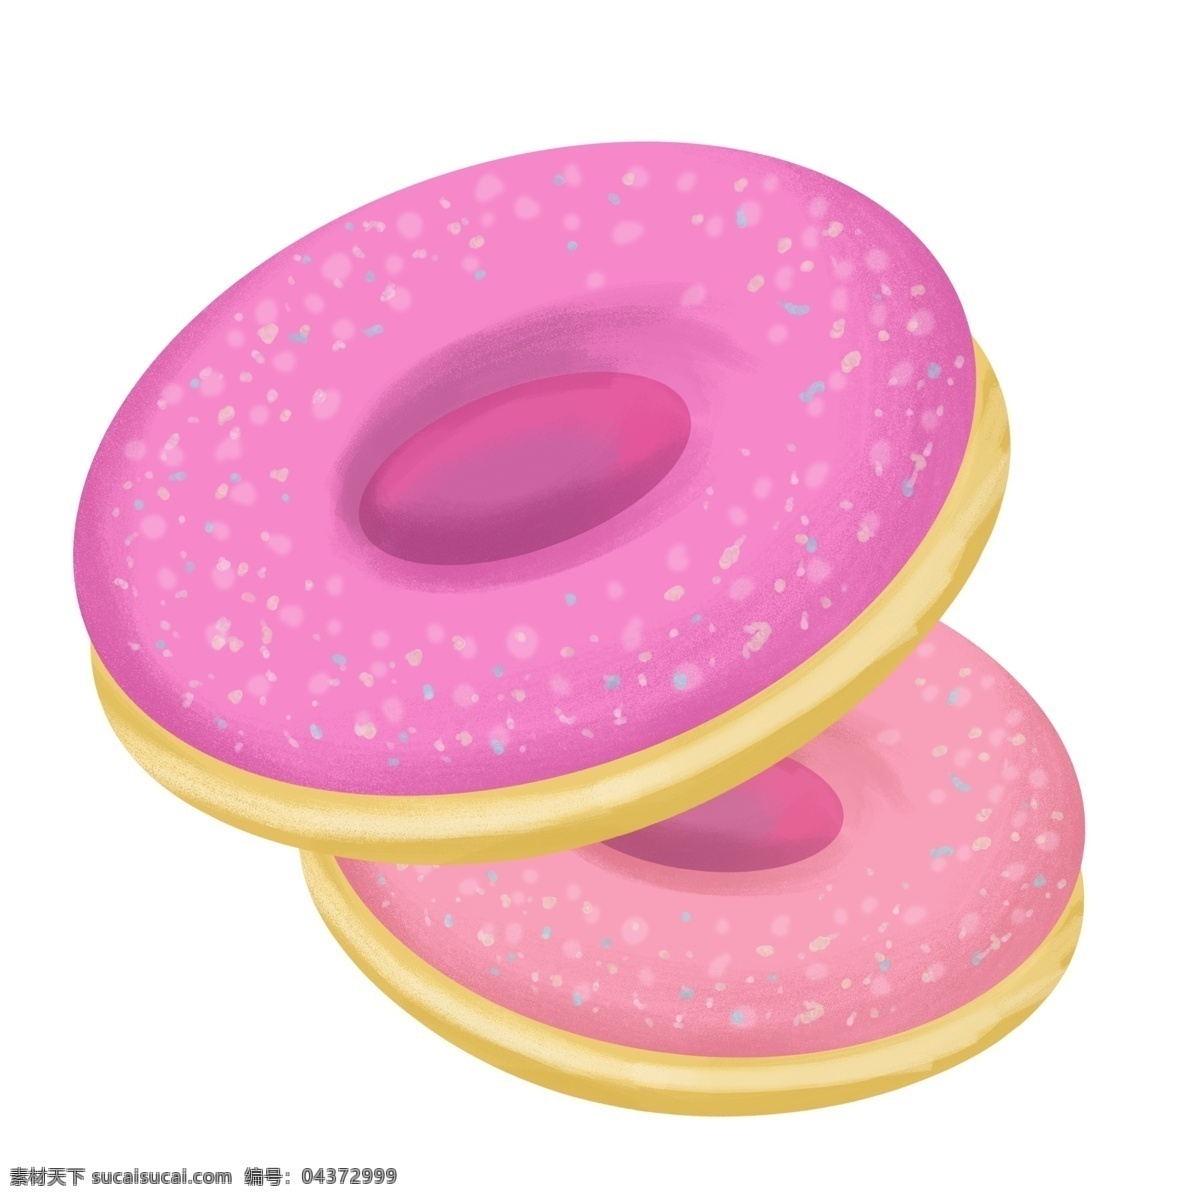 美味 粉色 甜甜 圈 甜品 面包圈 食品 粉色甜甜圈 奶油甜甜圈 糖霜甜品 奶油甜品 小面包 甜品零食 两个面包圈